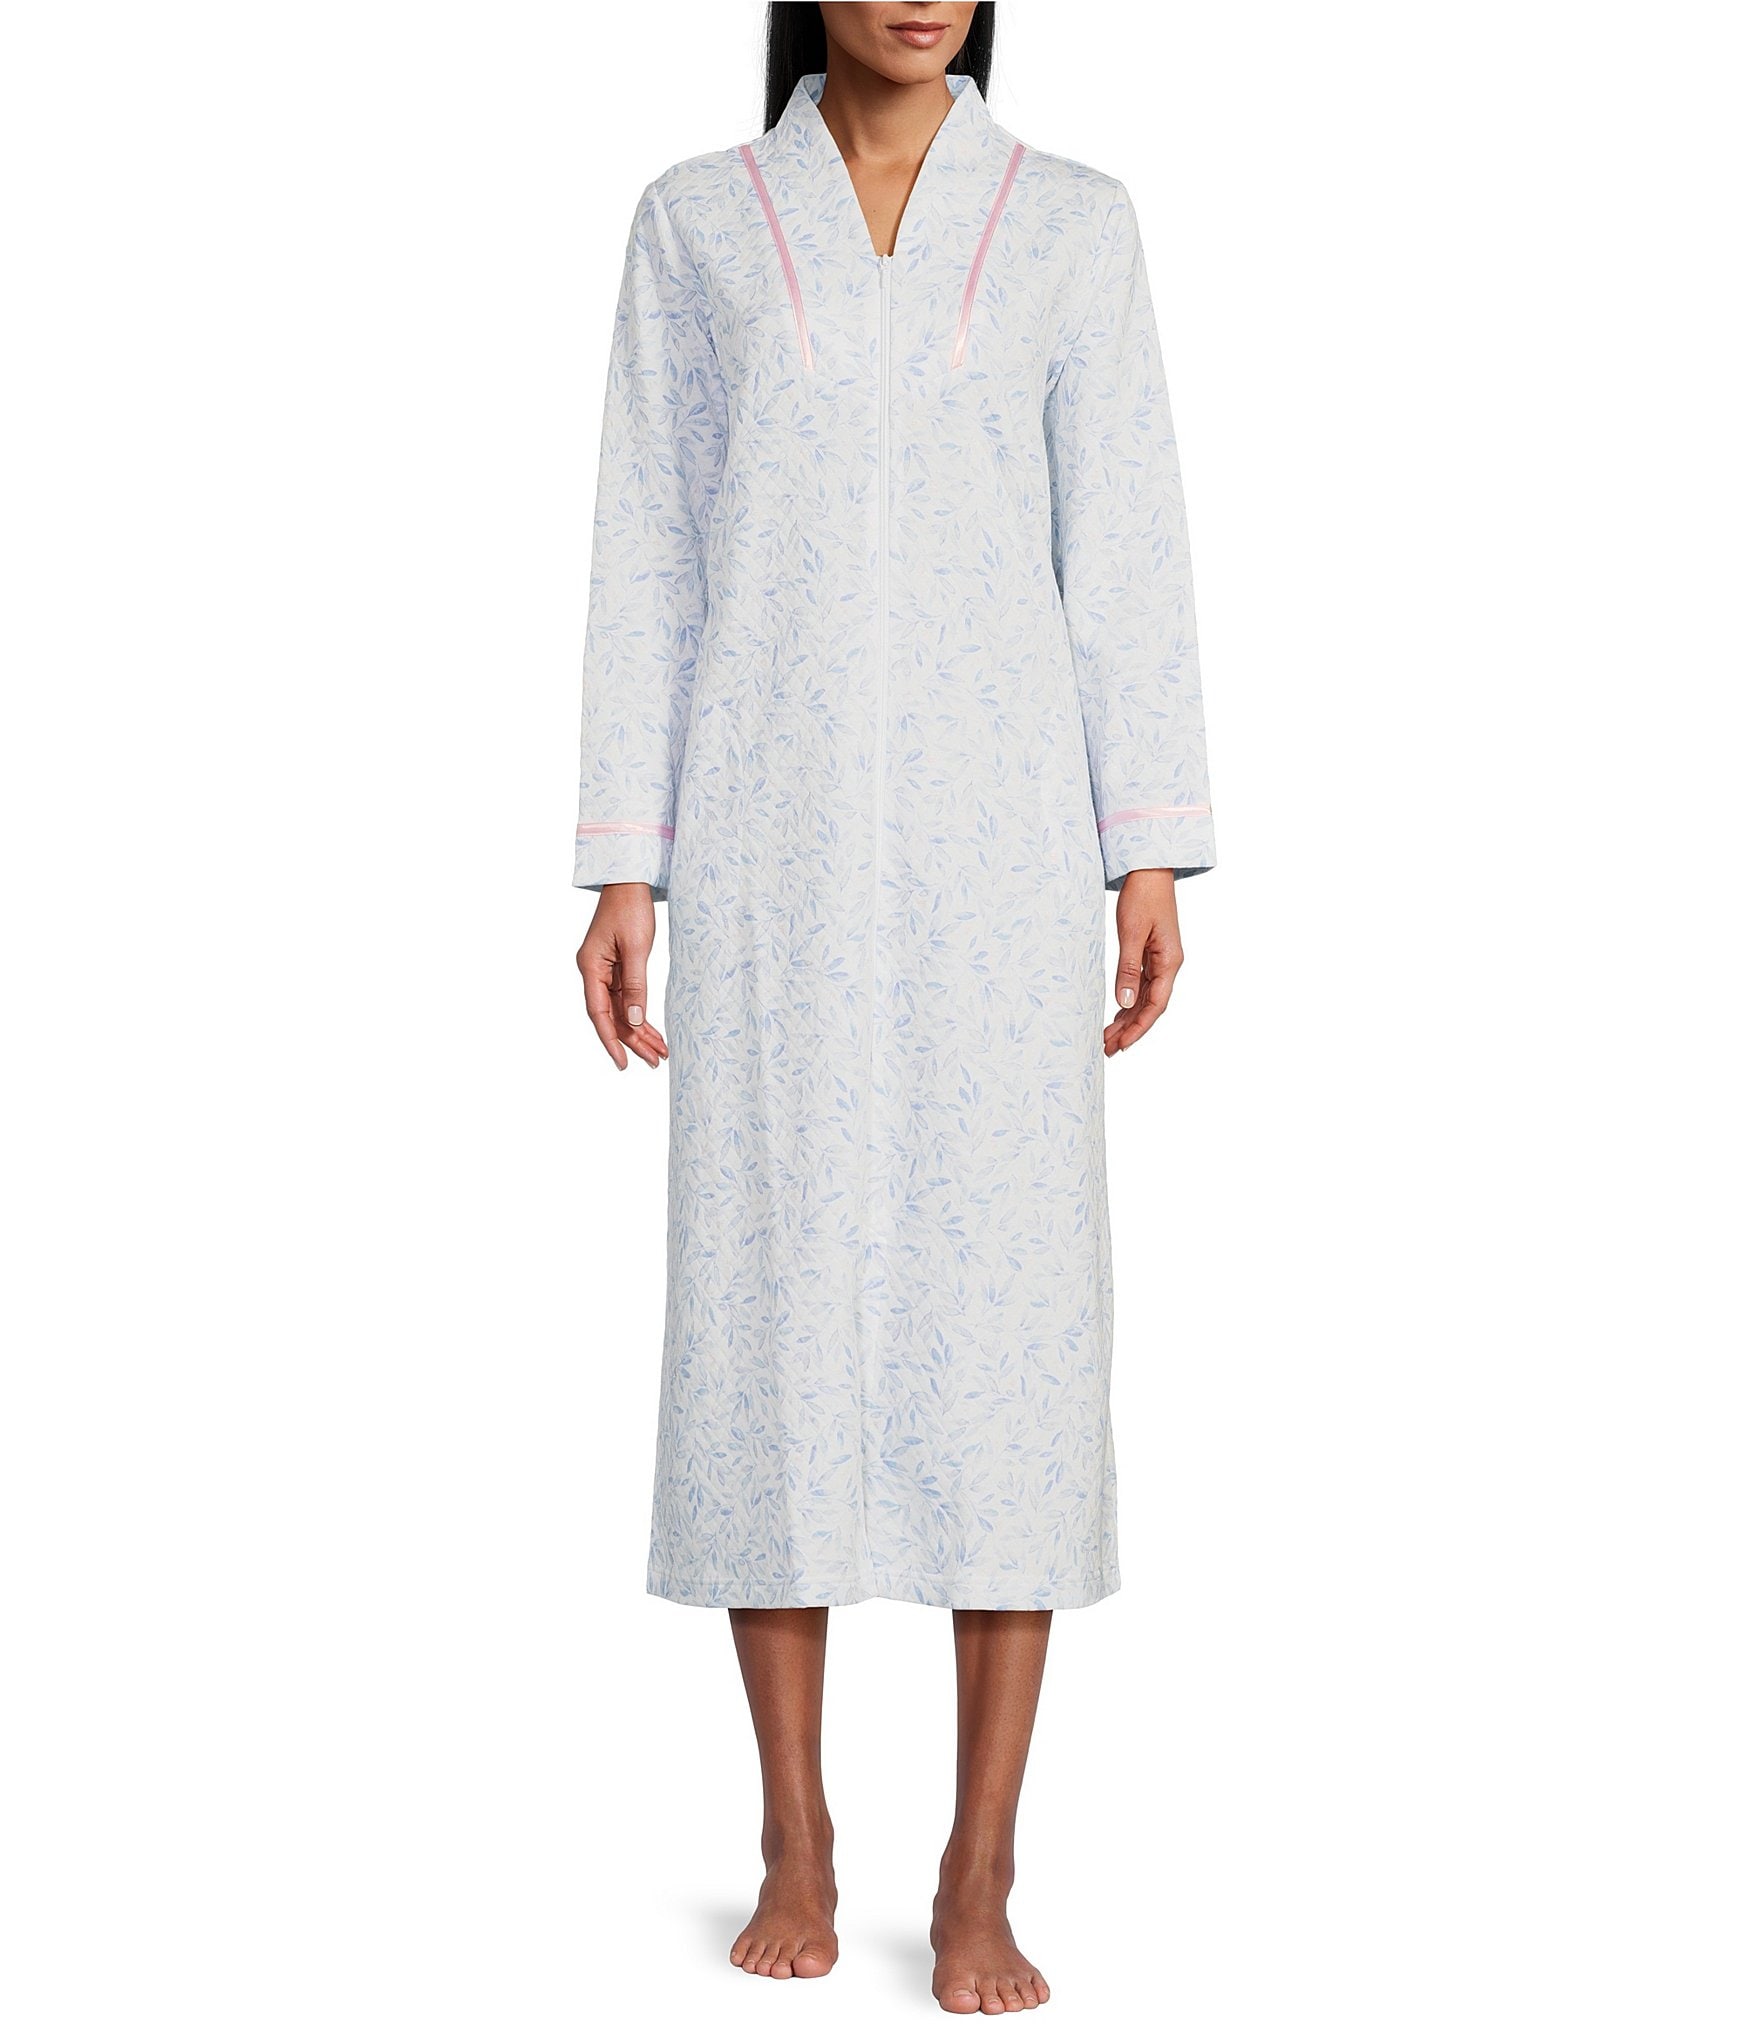 womens zipper front robes: Lingerie | Dillard's